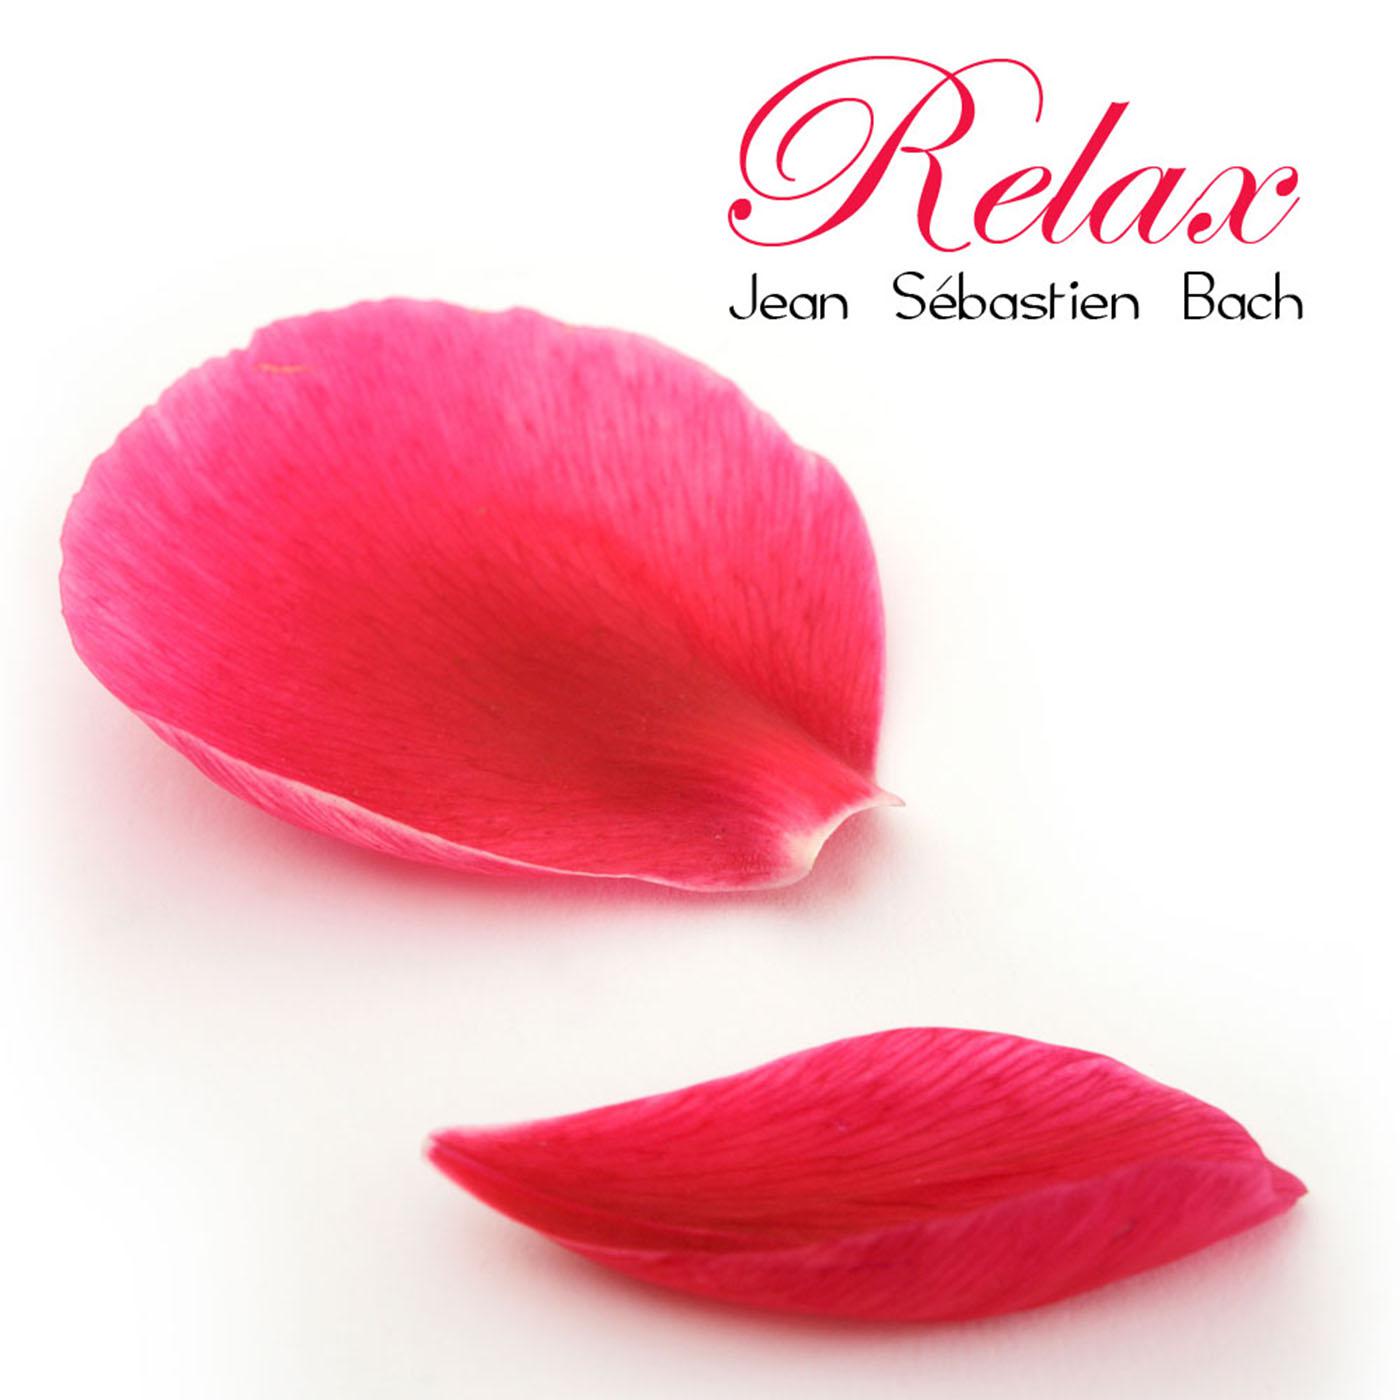 Relax: Jean Se bastien Bach et autres Airs de Musique Classique Anti Stress